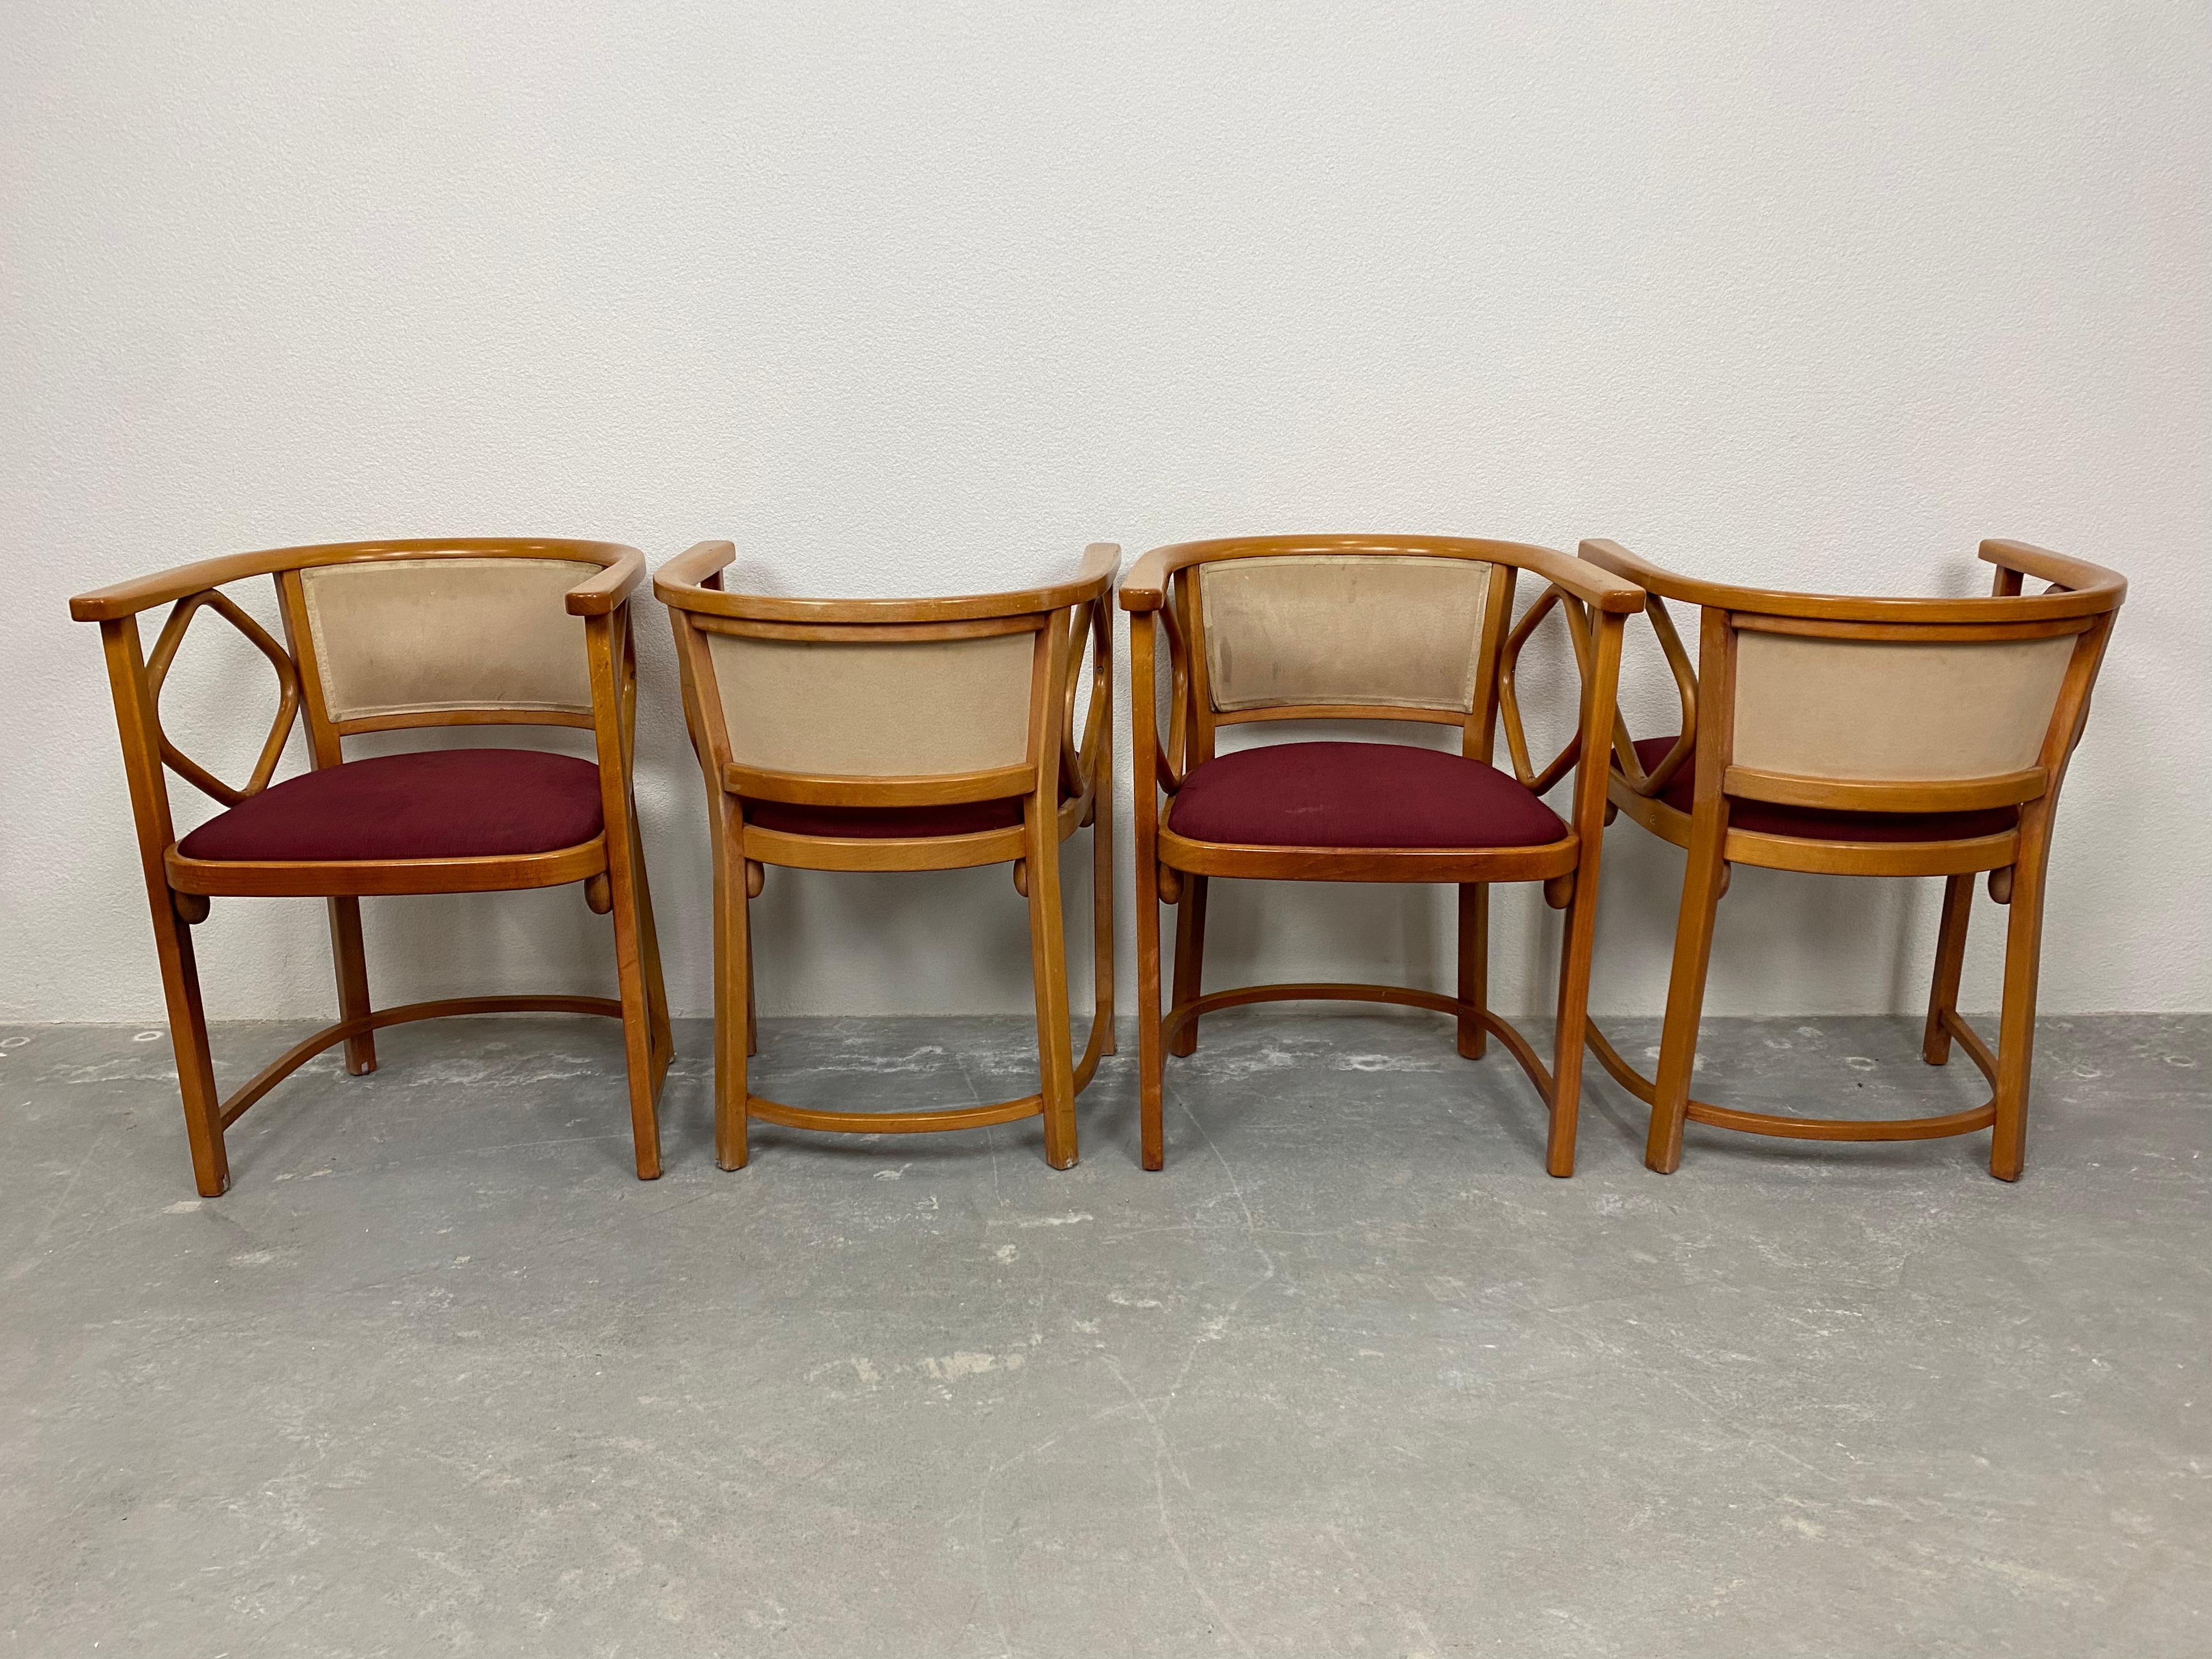 Ensemble de 4 chaises Fledermaus exécutées par Thonet en 1999. Etat vintage original avec des signes d'utilisation.